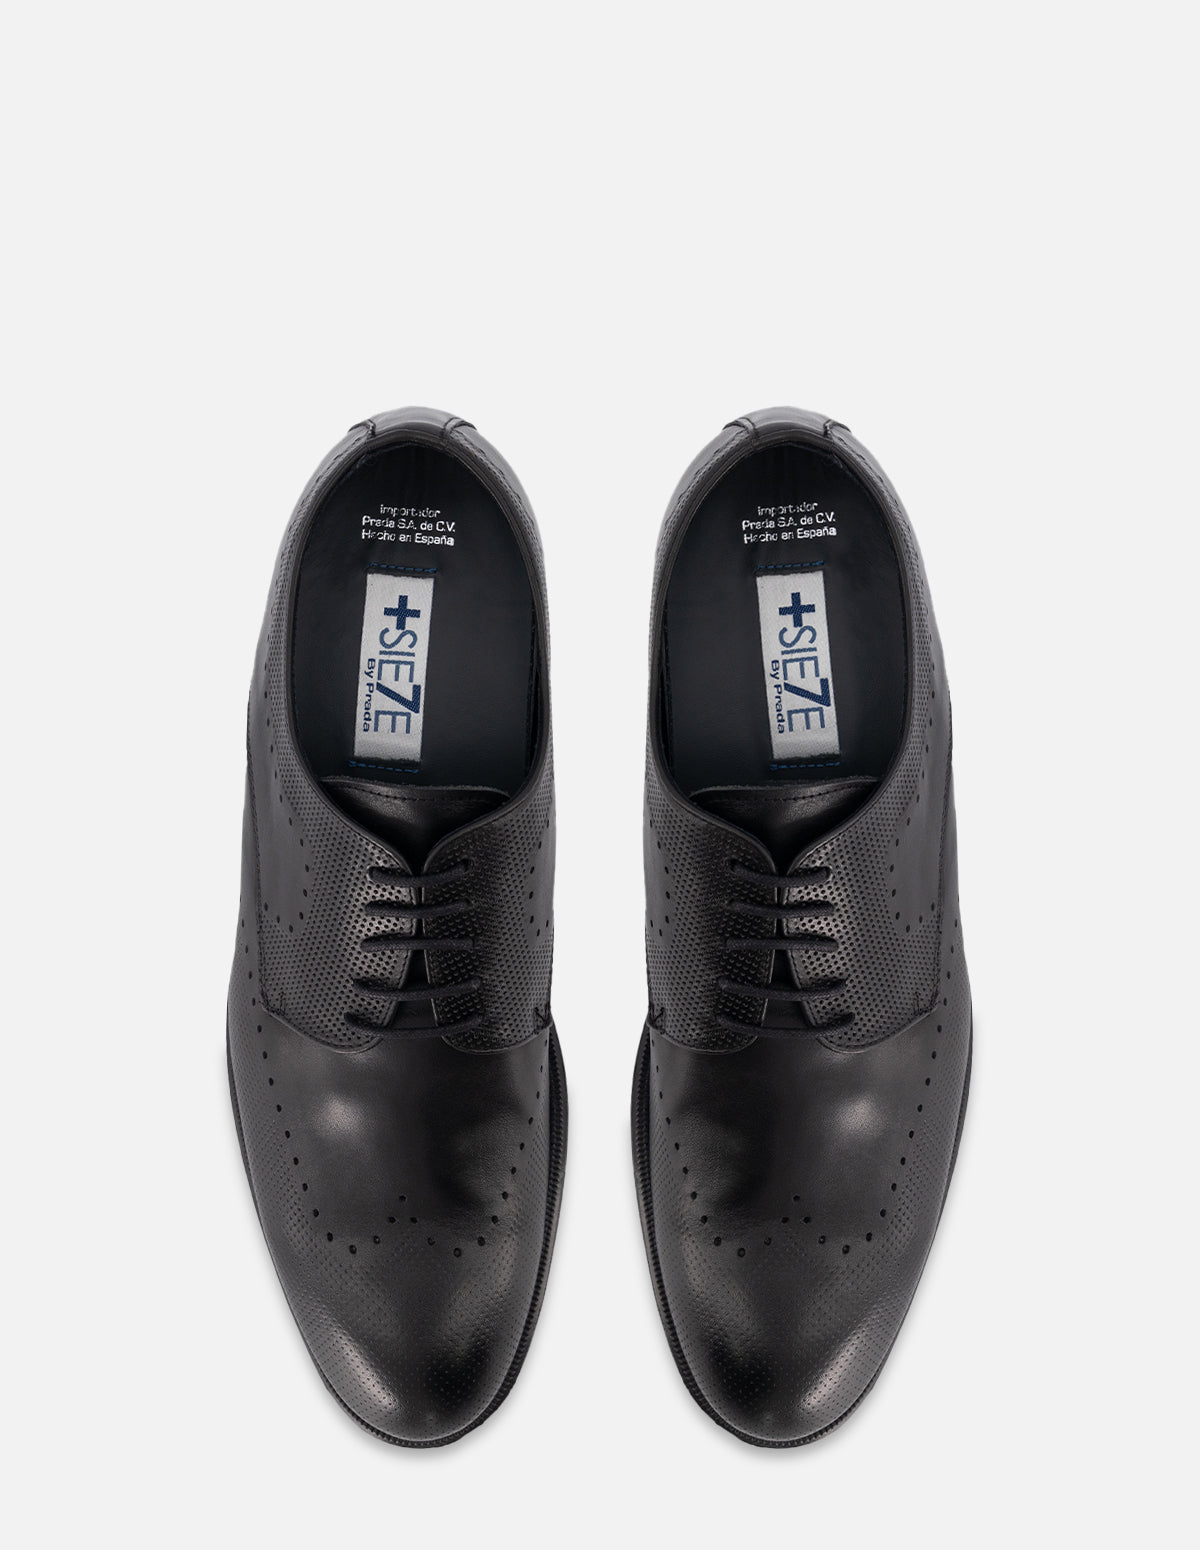 Zapato Bostoniano +7 en piel color negro con picado para hombre